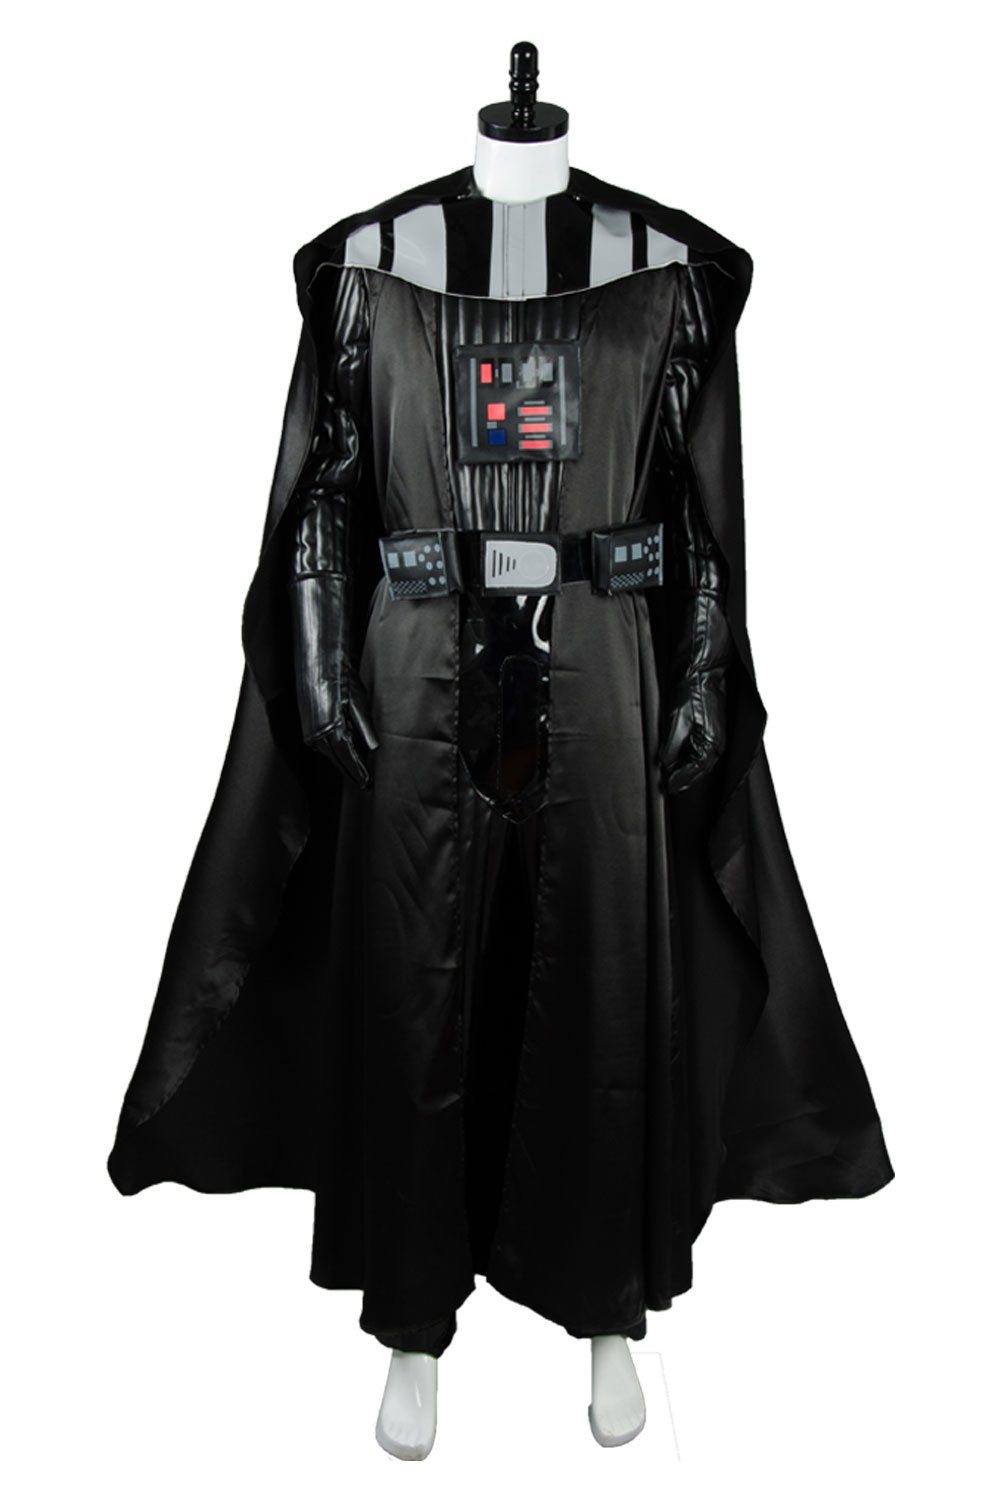 Star Wars Darth Vader Cosplay Kostüm Deluxe Version